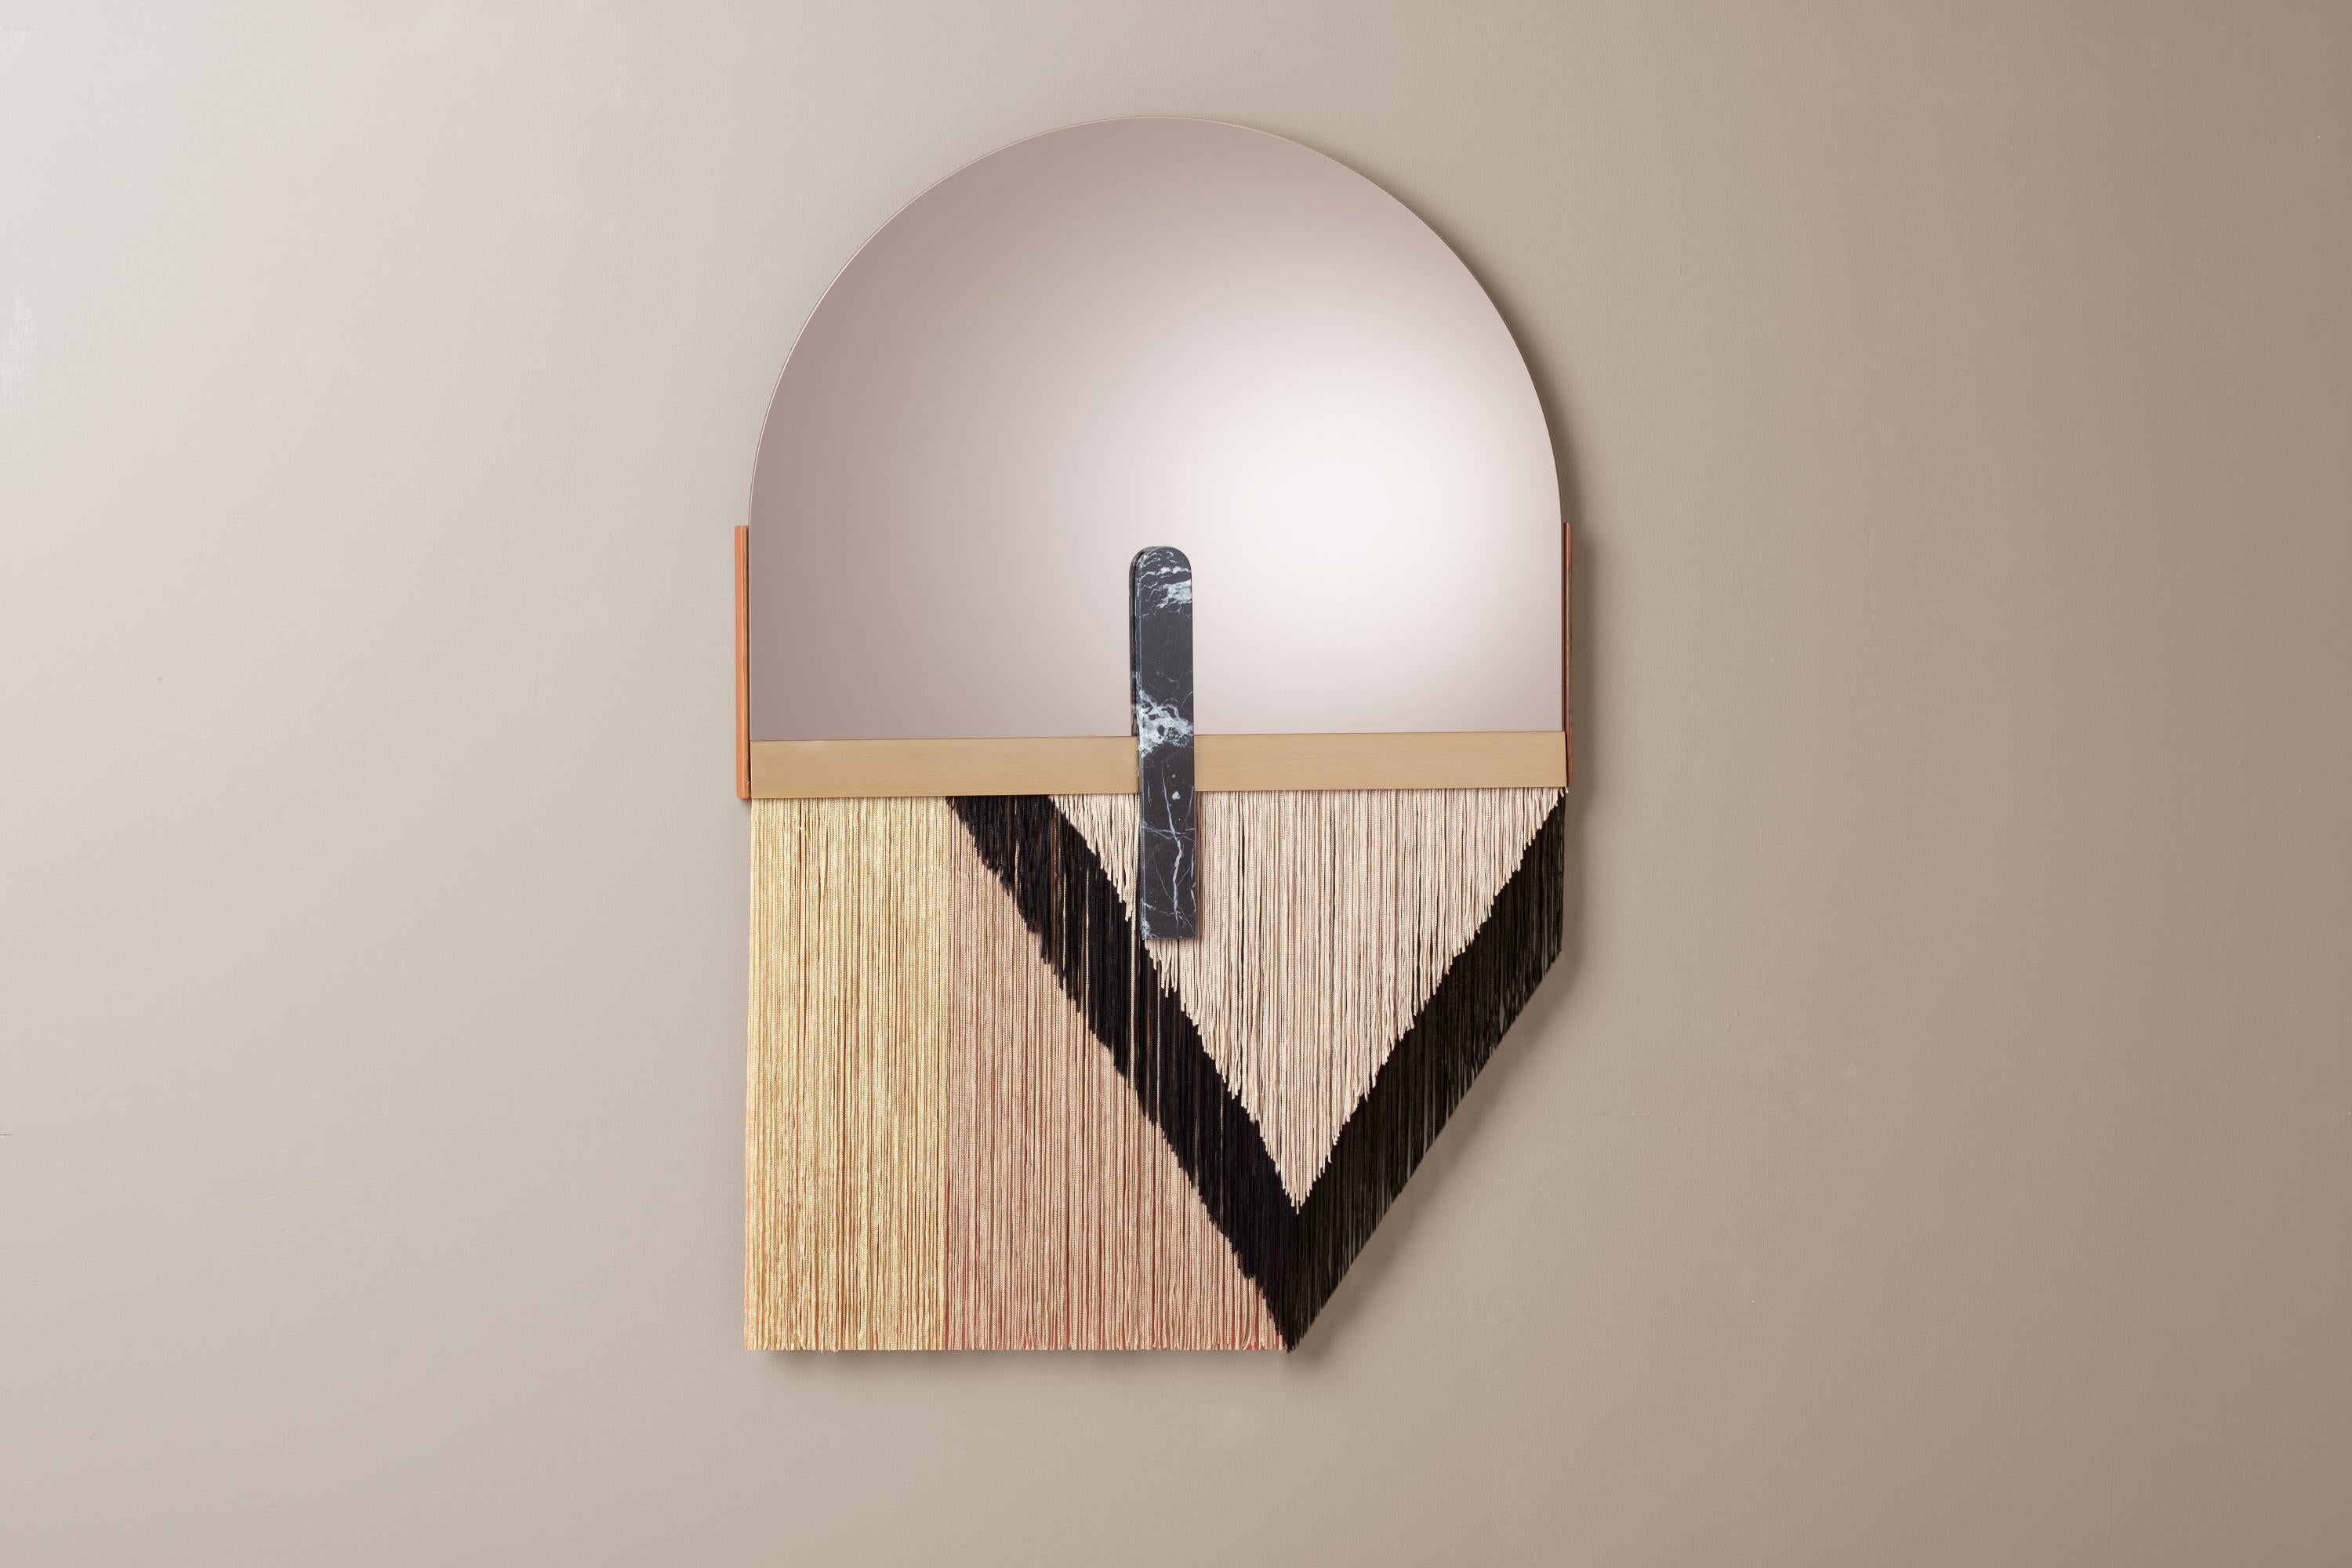 Miroir mural par DOOQ
Mesures : L 61 cm 24